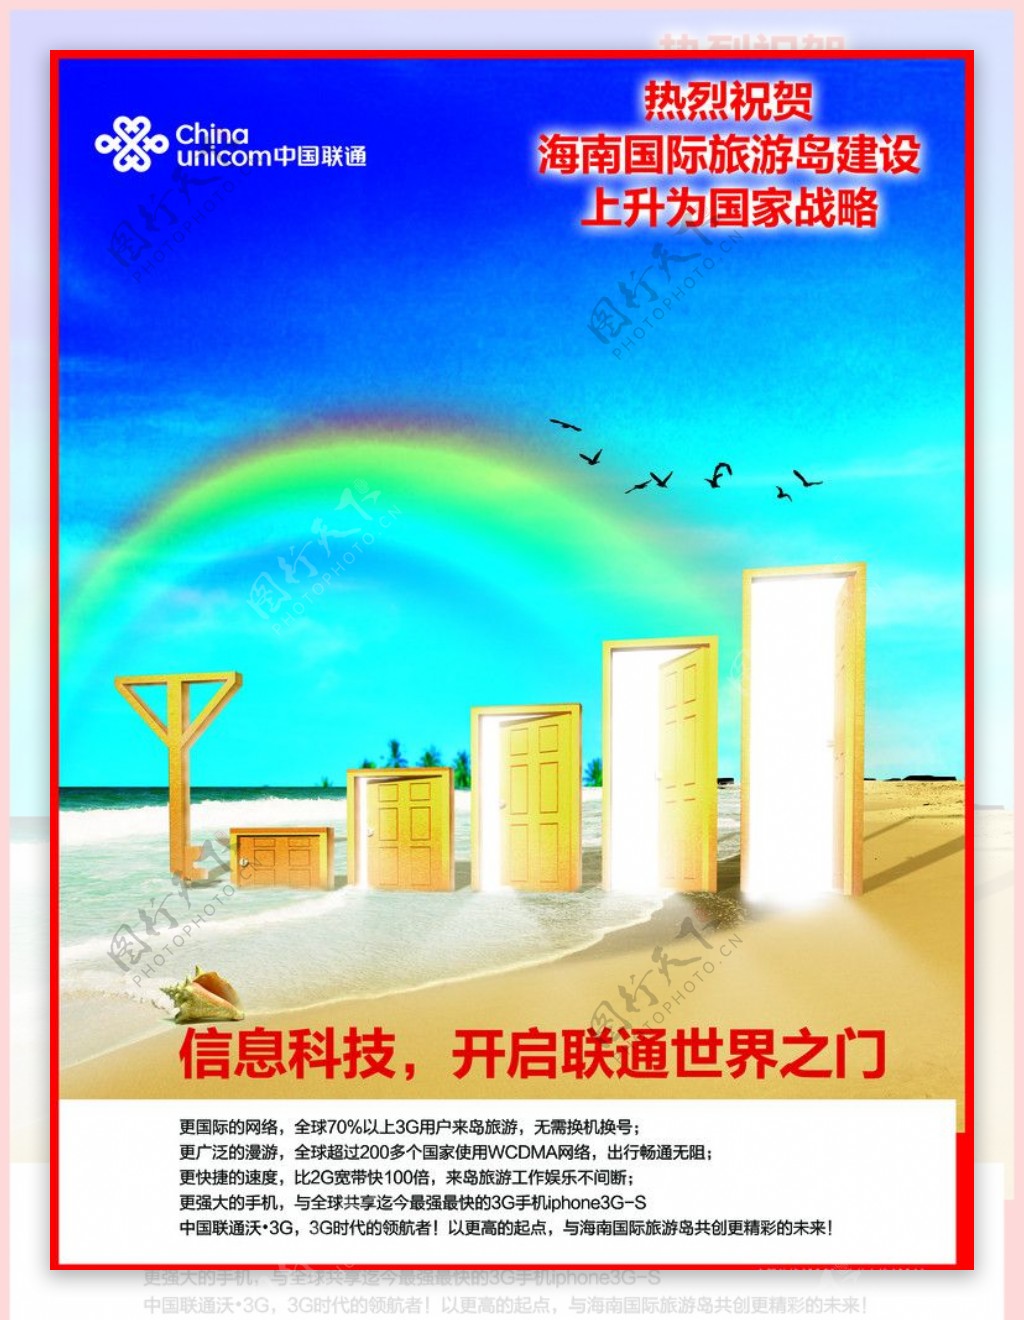 联通祝贺海南国际旅游岛上升为国家战略整版报广